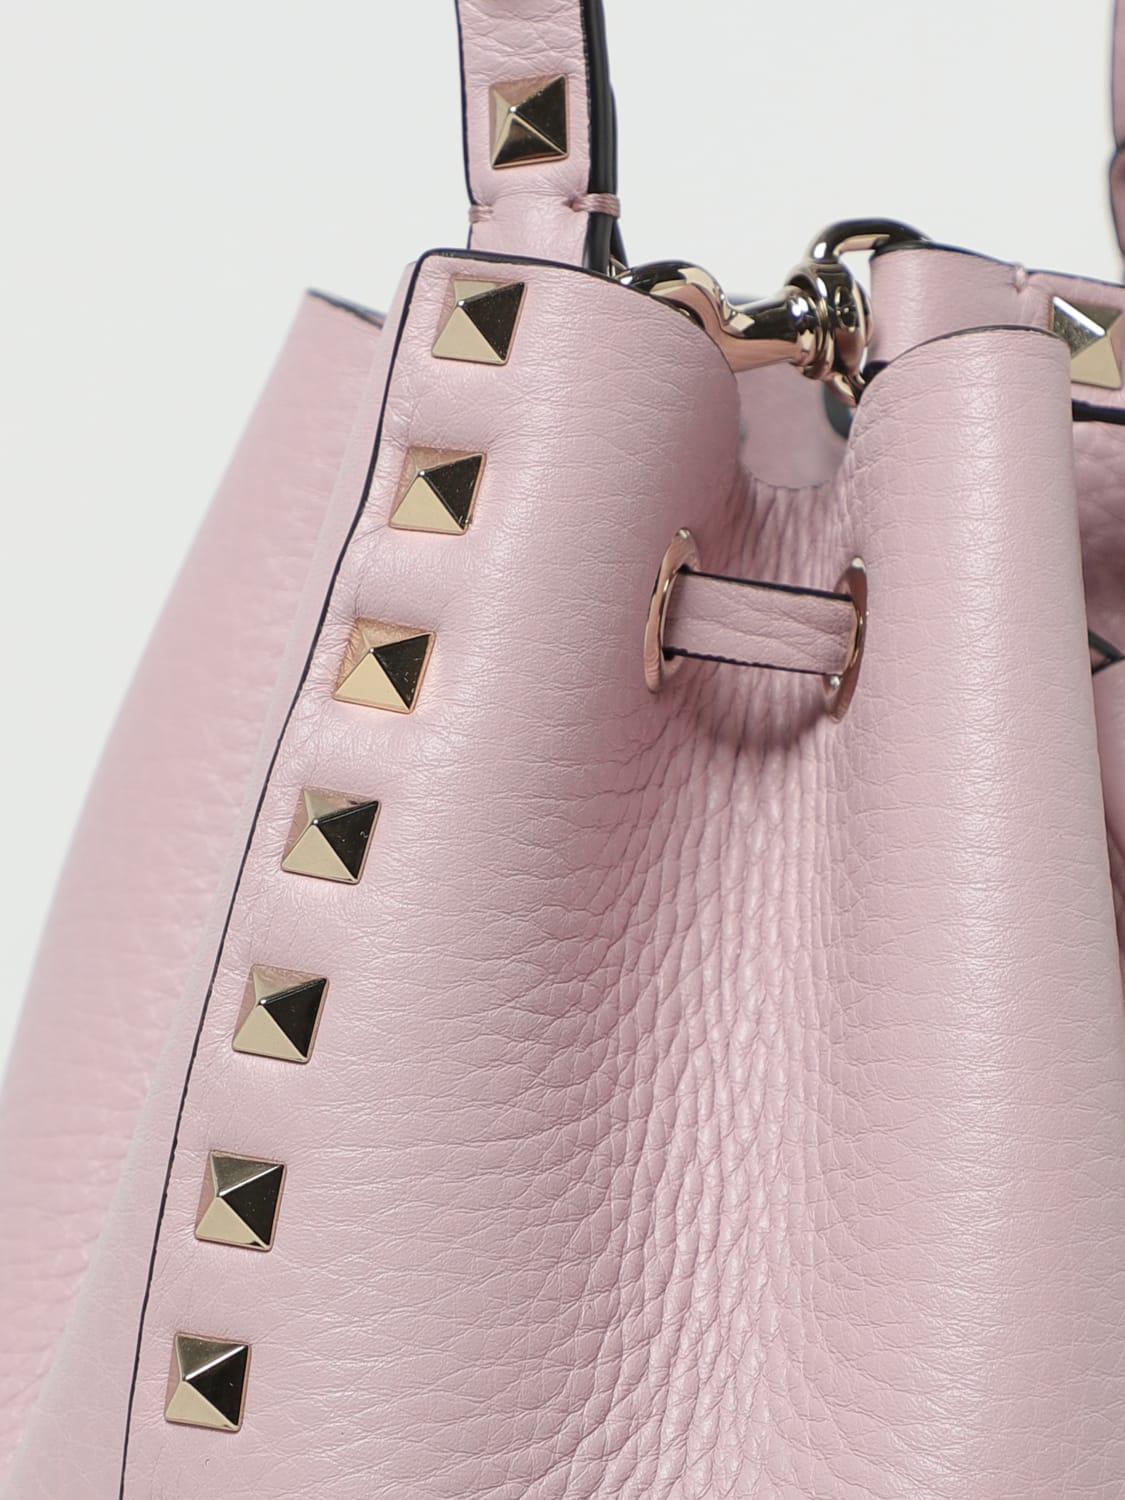 VALENTINO GARAVANI: Rockstud bag in textured leather - Pink  Valentino  Garavani mini bag 3W2B0L31VSF online at